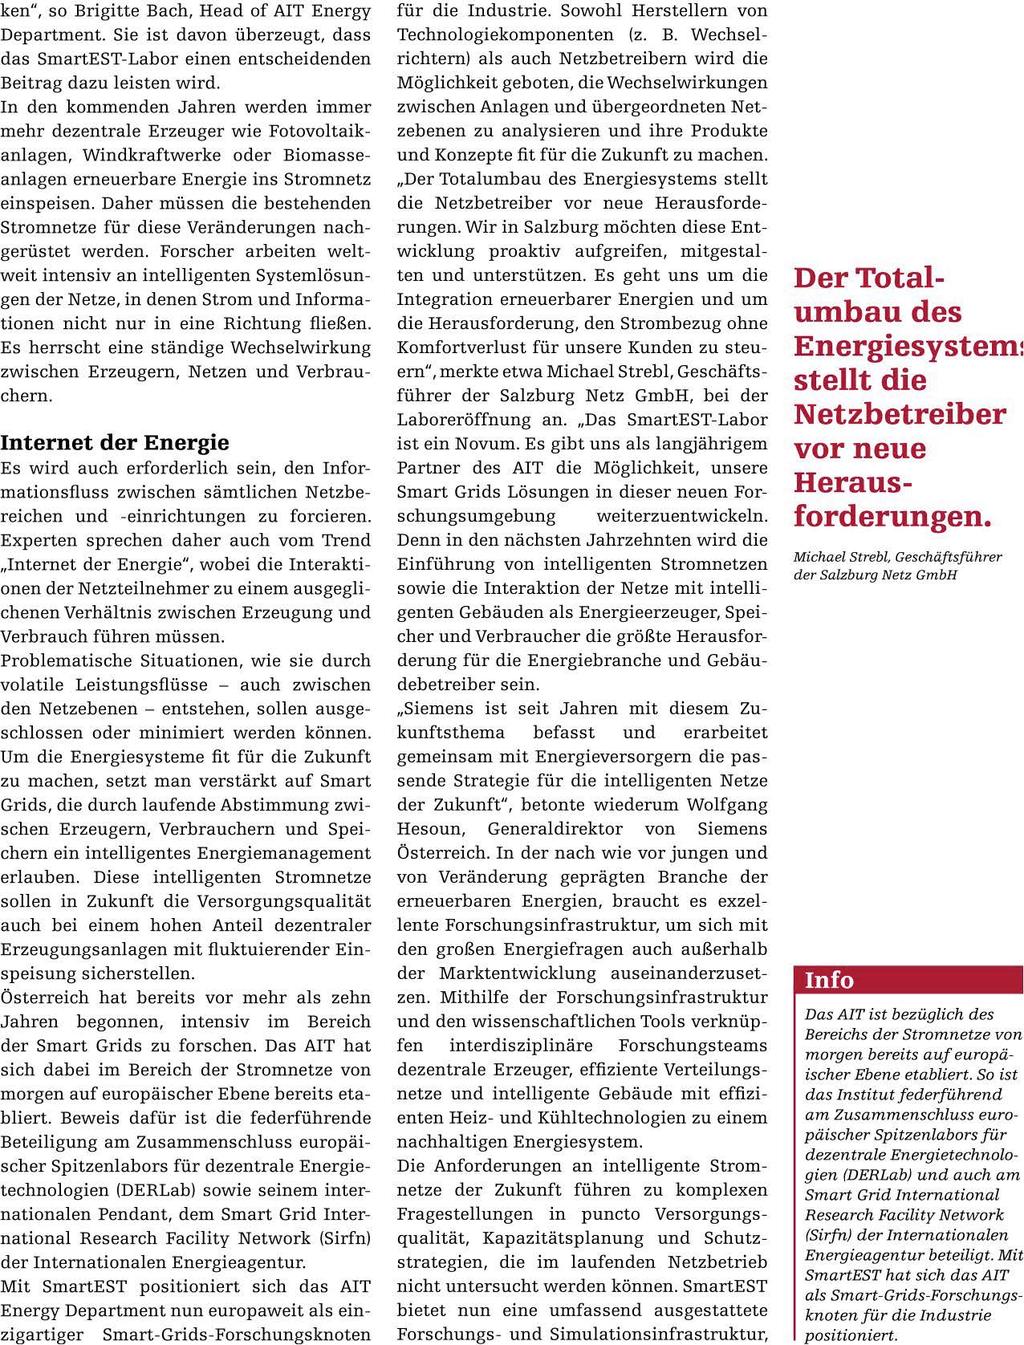 Oesterreichs Energie Seite 57 / 04.06.